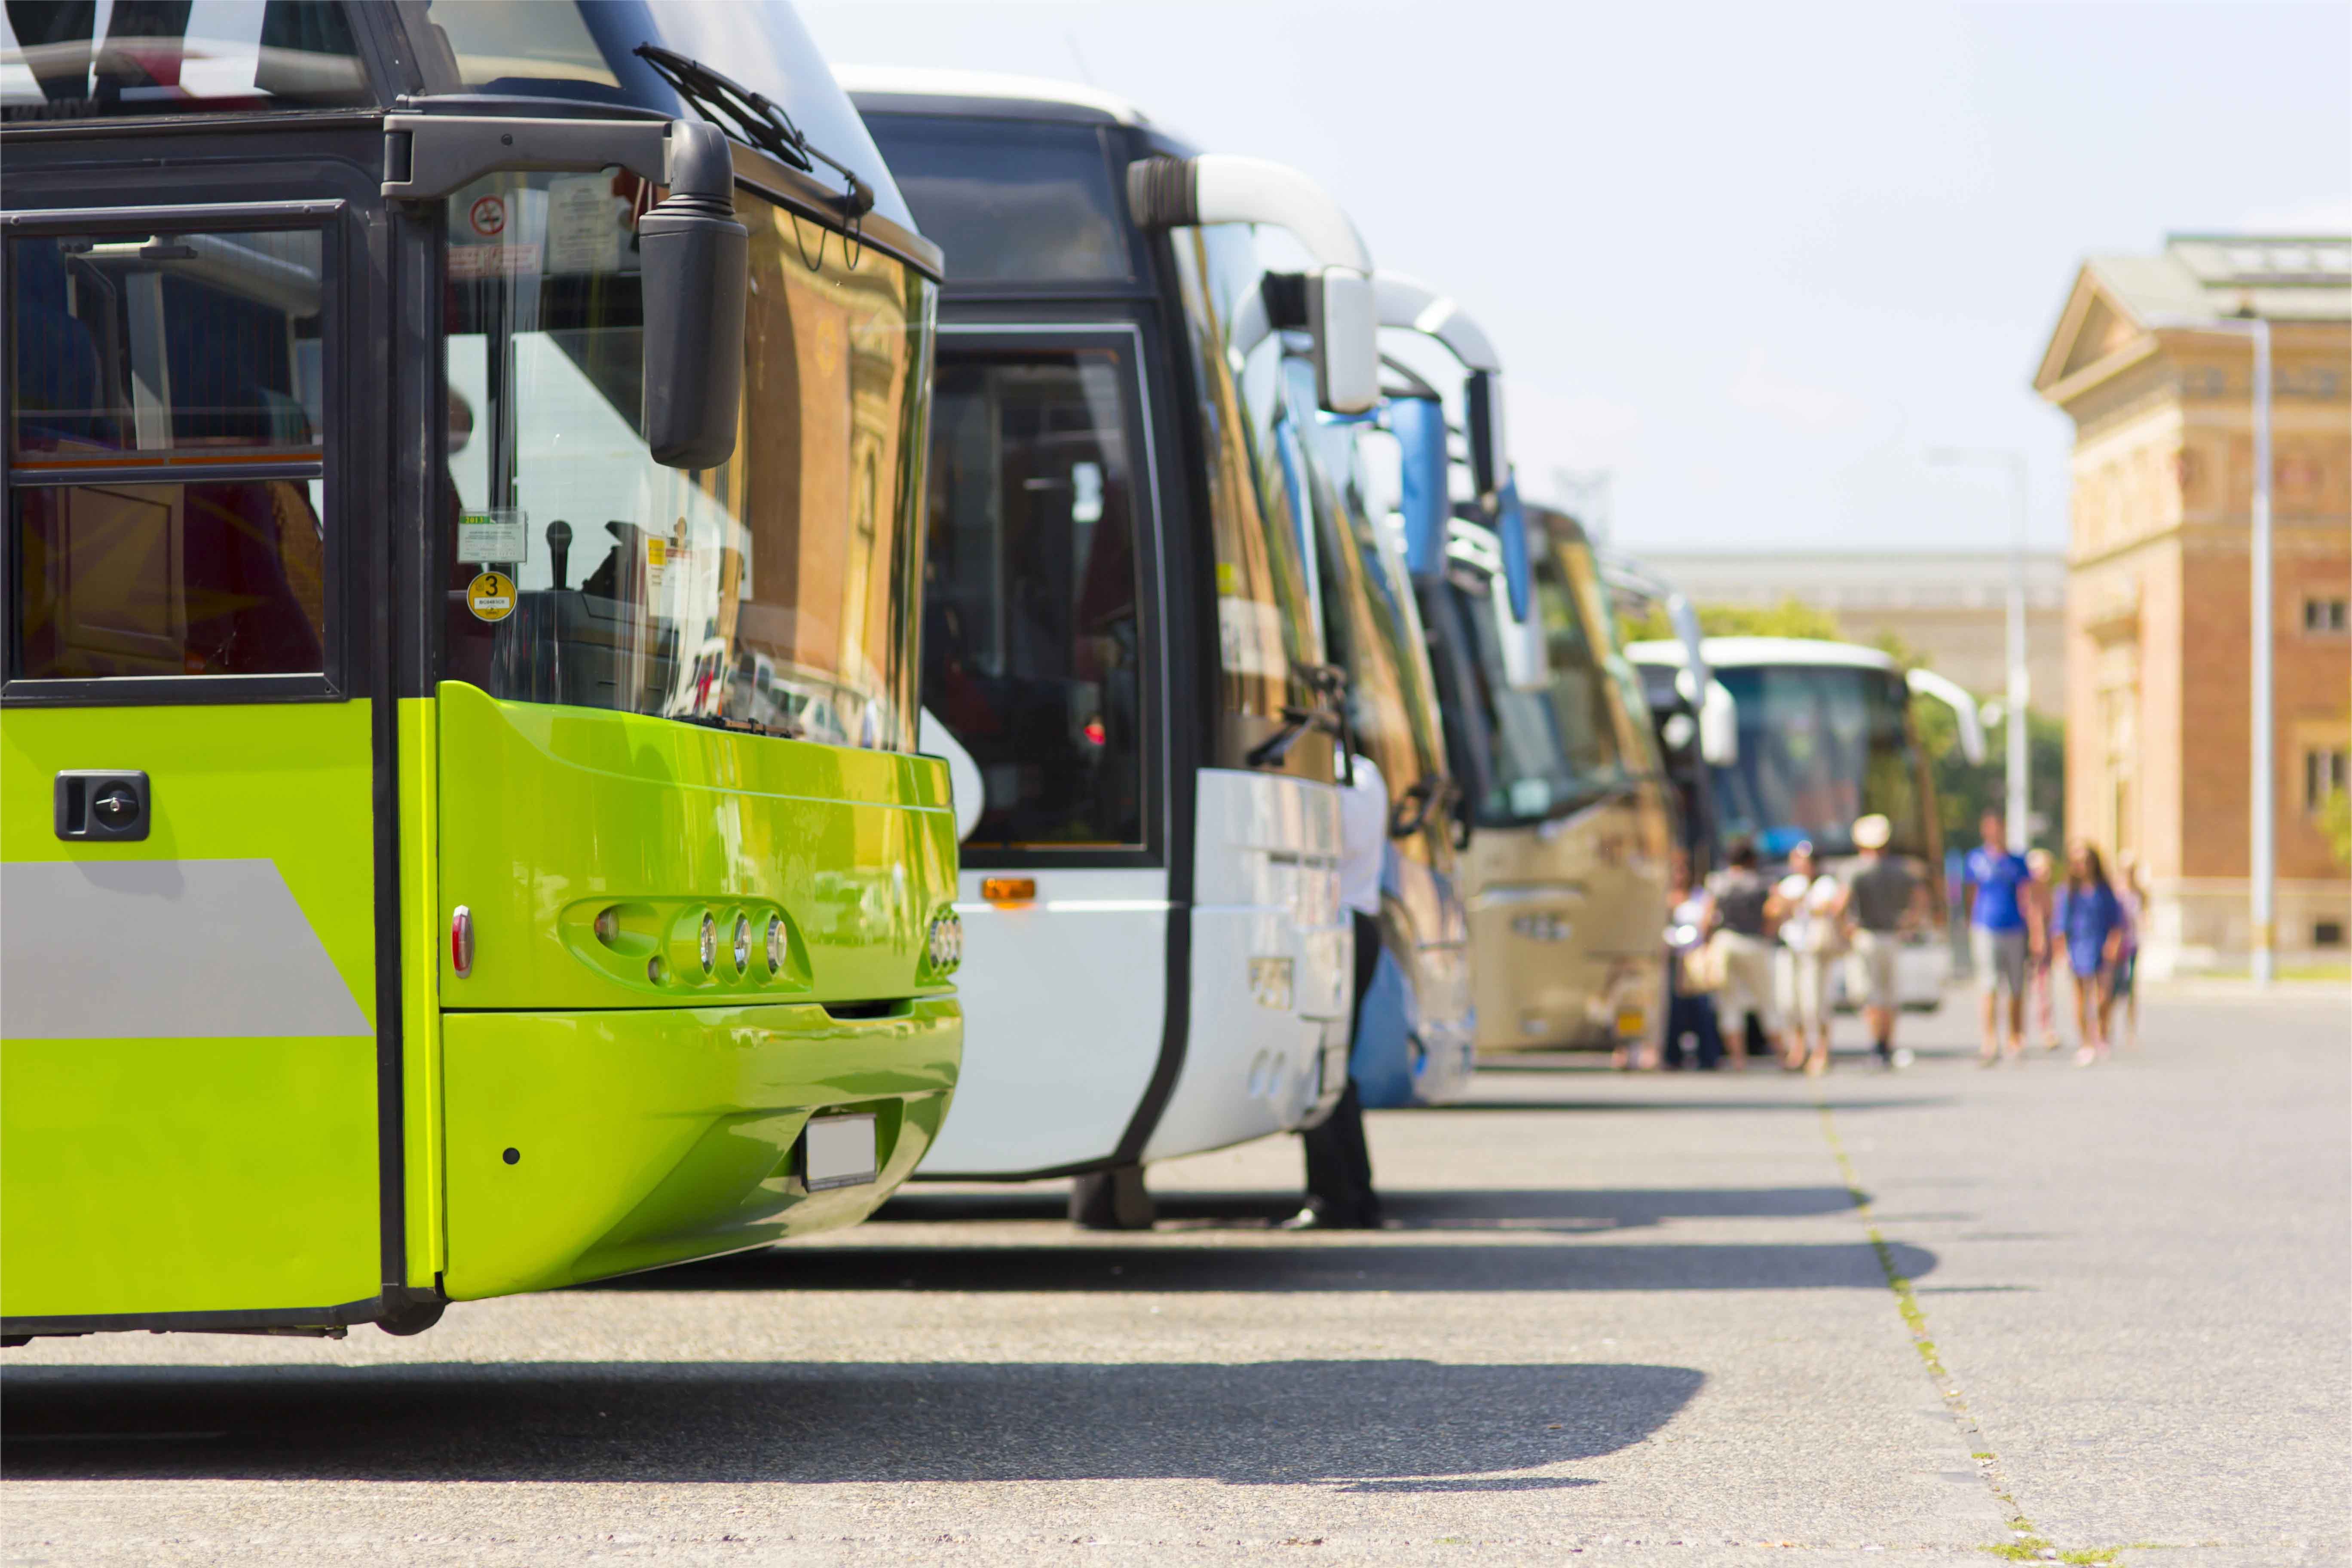 European City Buses Go Green: 42% Karon Zero-Emission, Report Shows